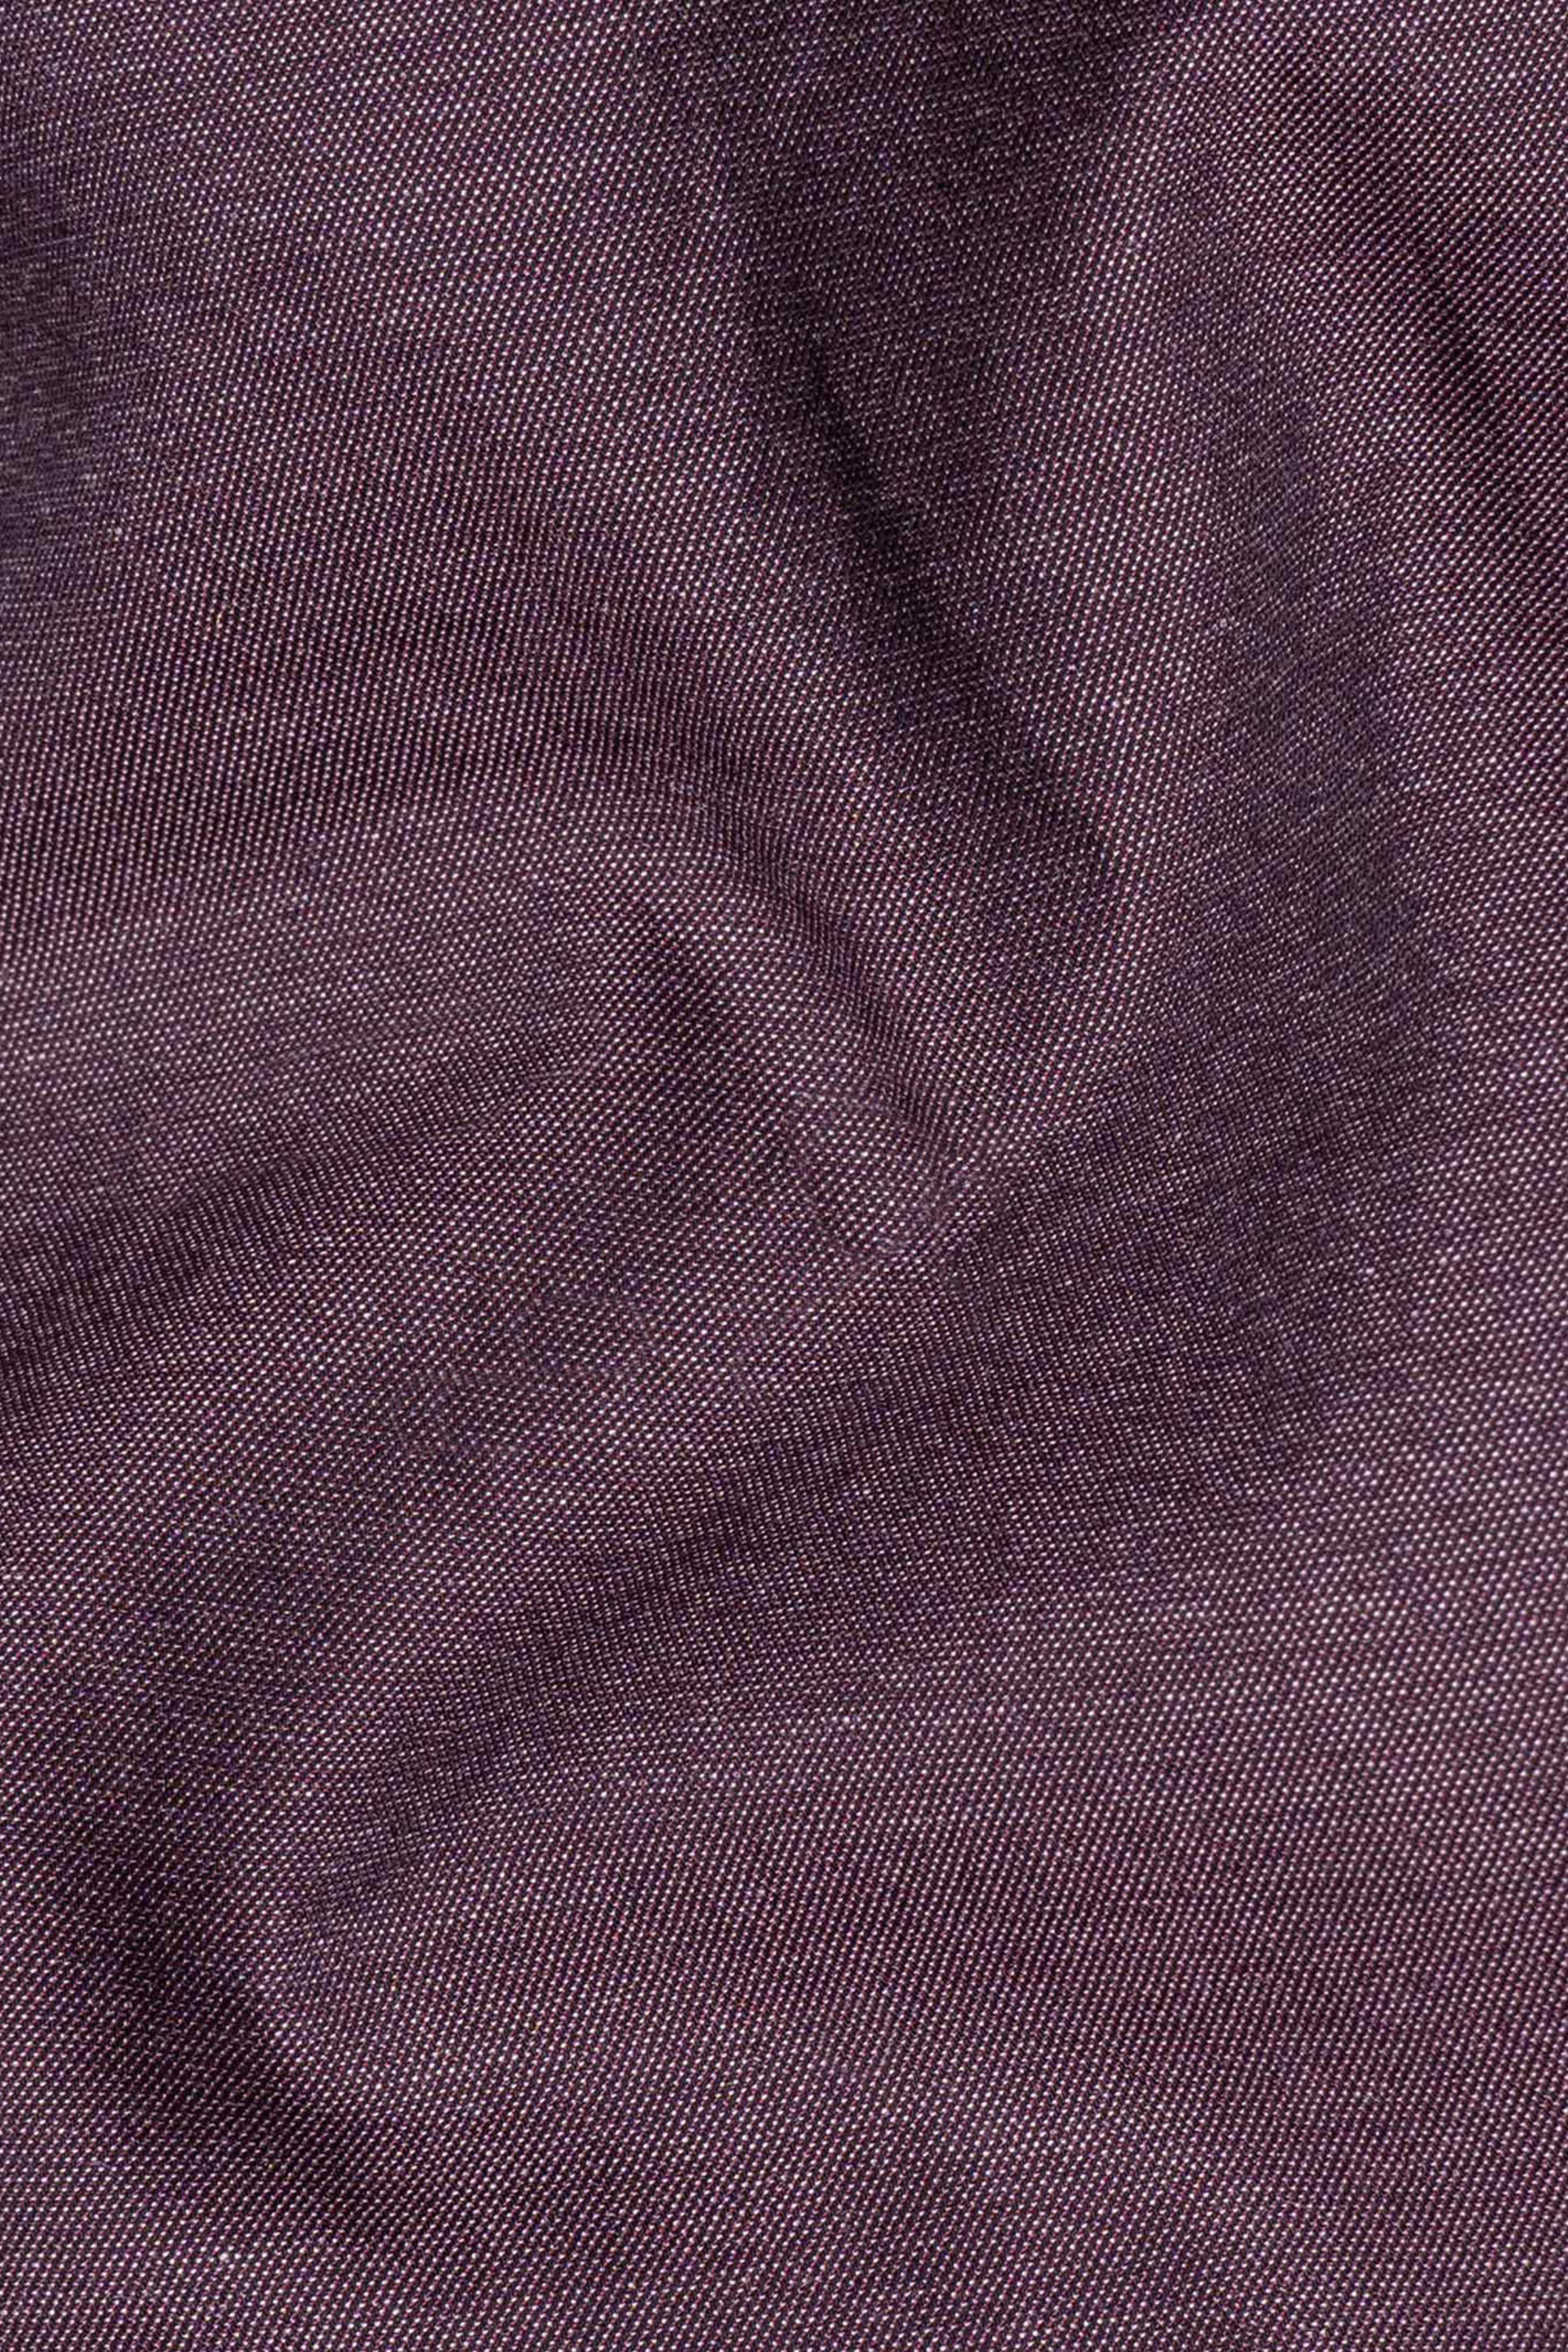 Matterhorn Purple Tribal Patchwork Chambray Designer Shirt